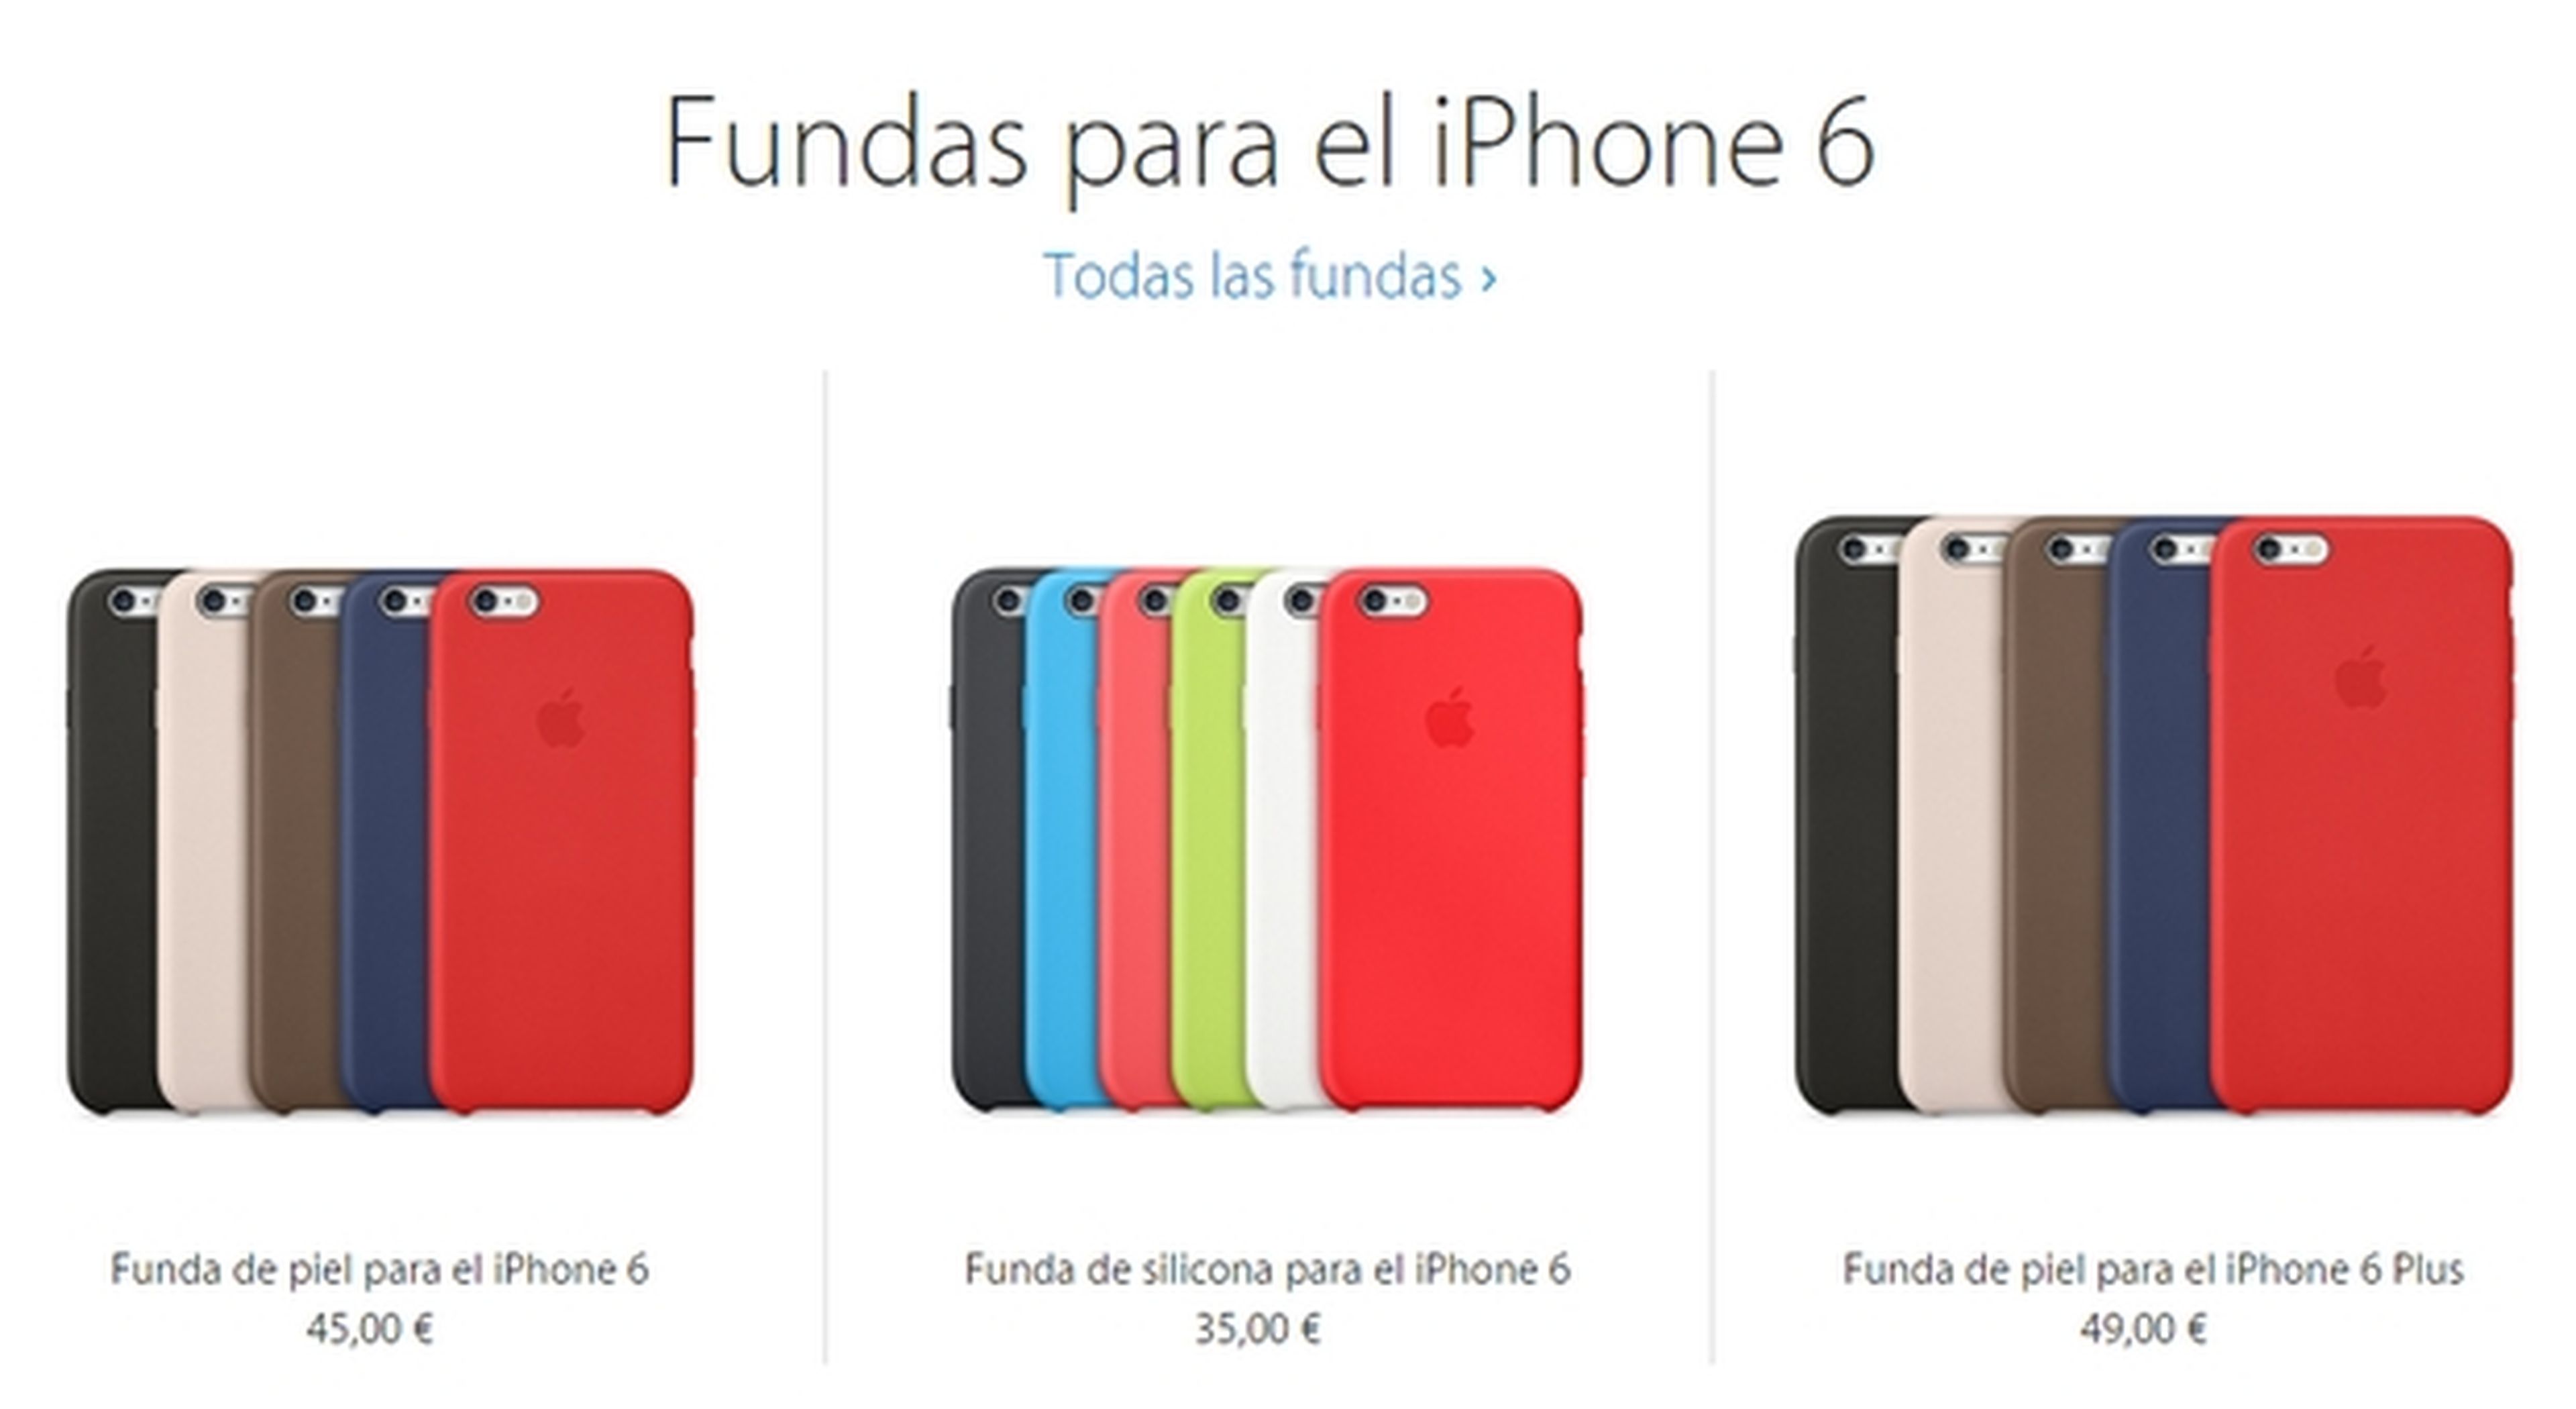 Fundas iPhone 6 y iPhone 6 Plus